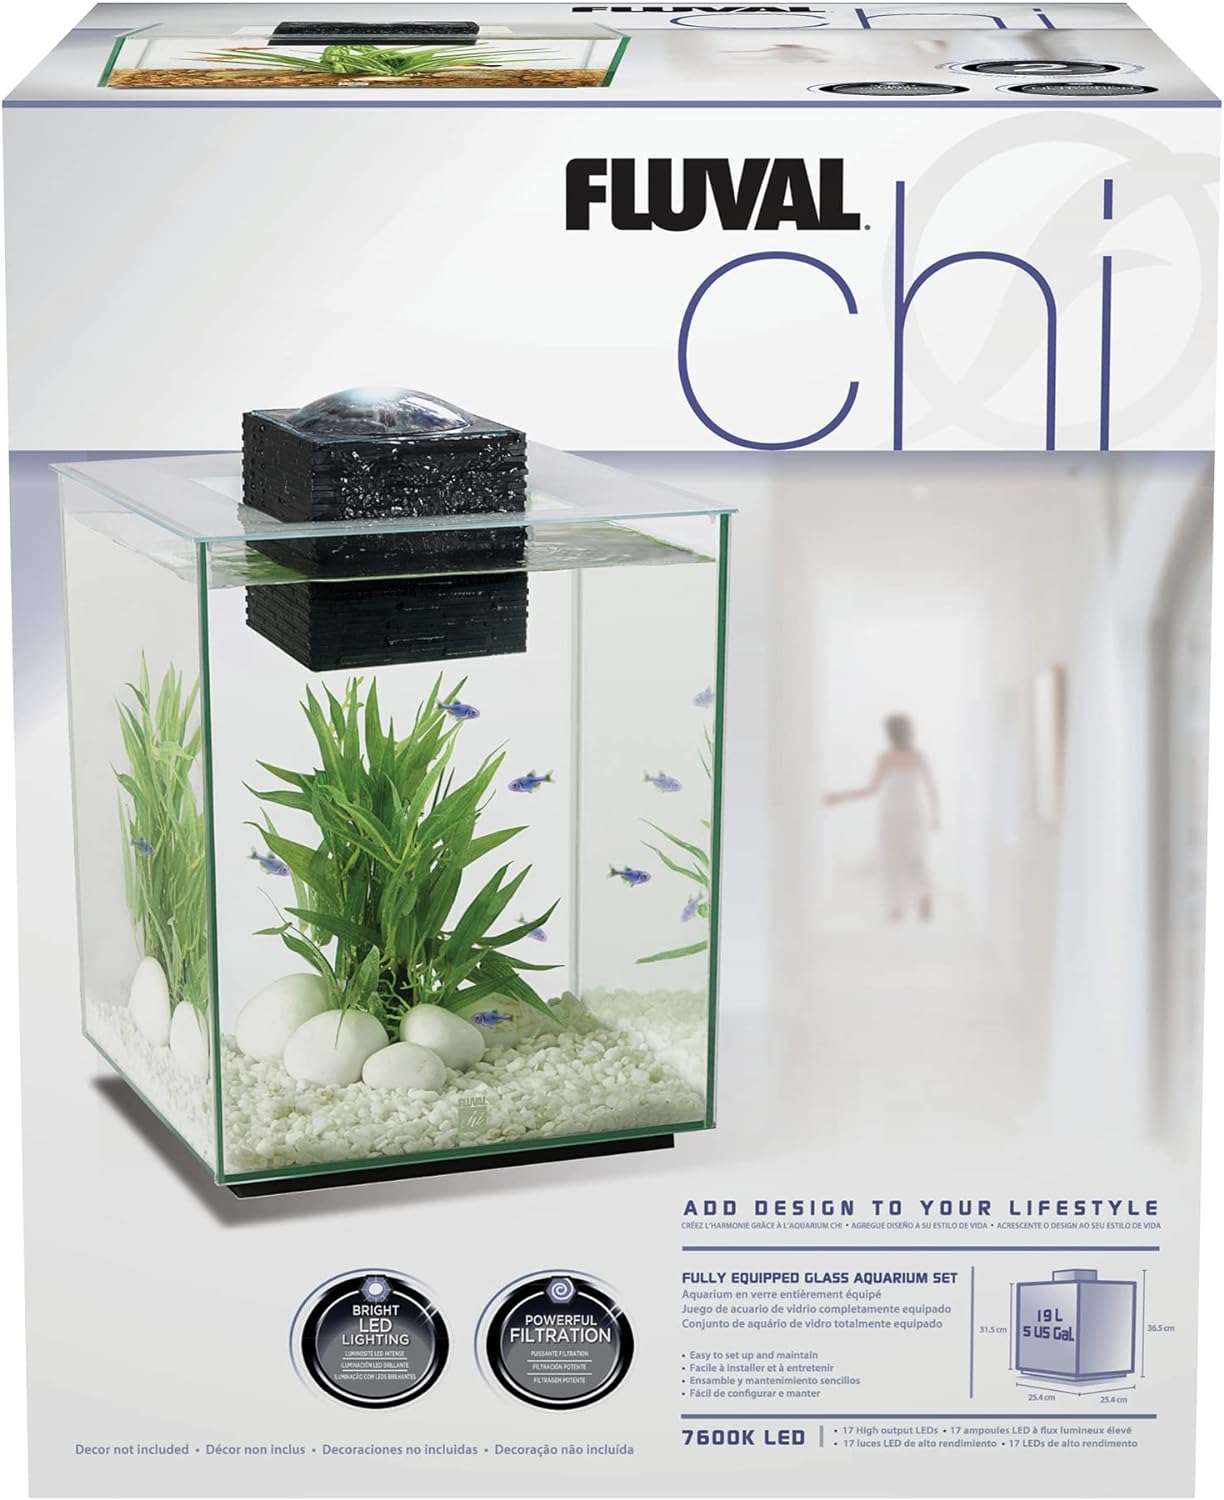 Fluval Chi II Series Aquarium Set, 5-Gallon - Aquarium Tank with Ambient LED Lighting, Flowing Water, and Elegant Design, White